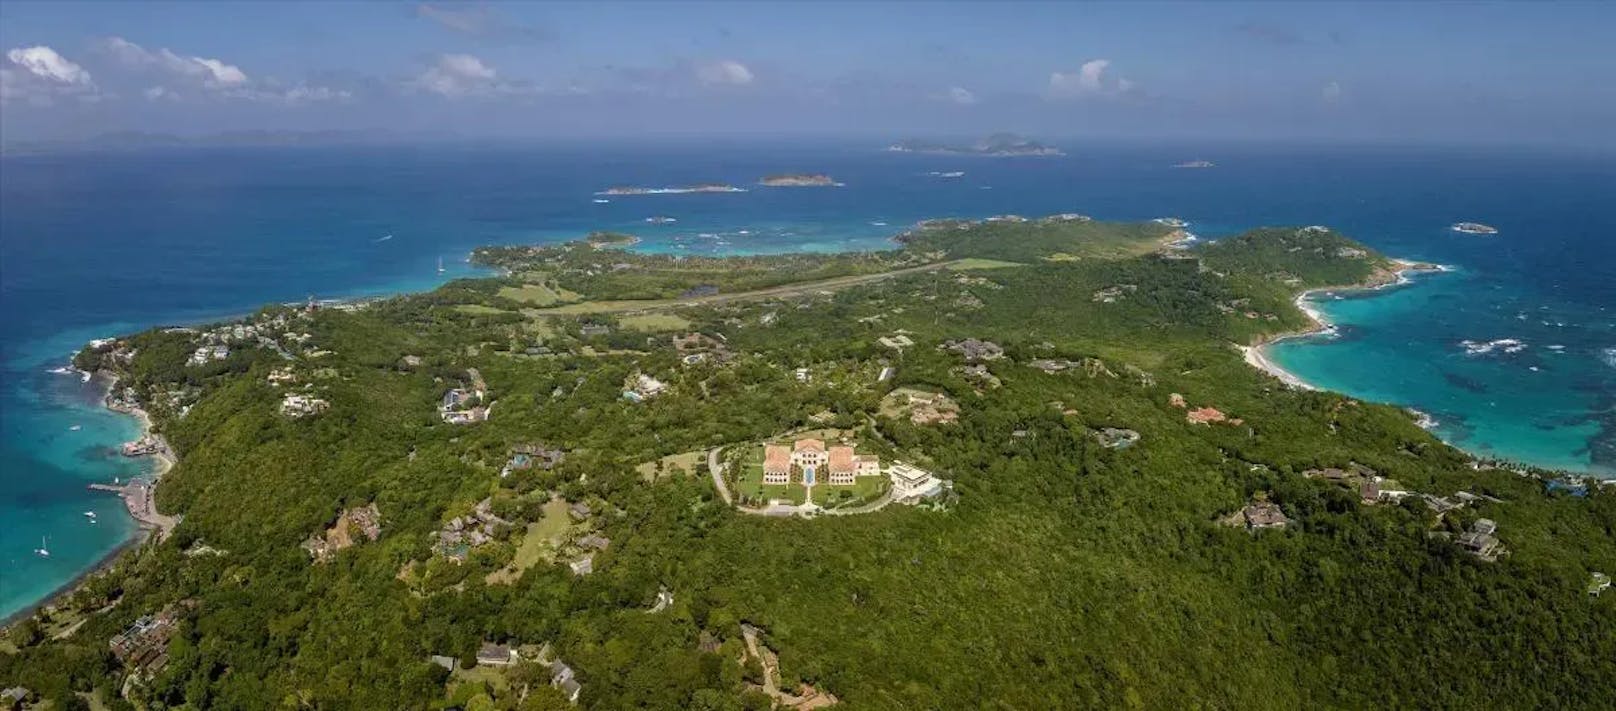 Exklusiver wird es nicht mehr: The Terraces ist das größte und auffälligste Haus auf der Karibikinsel.